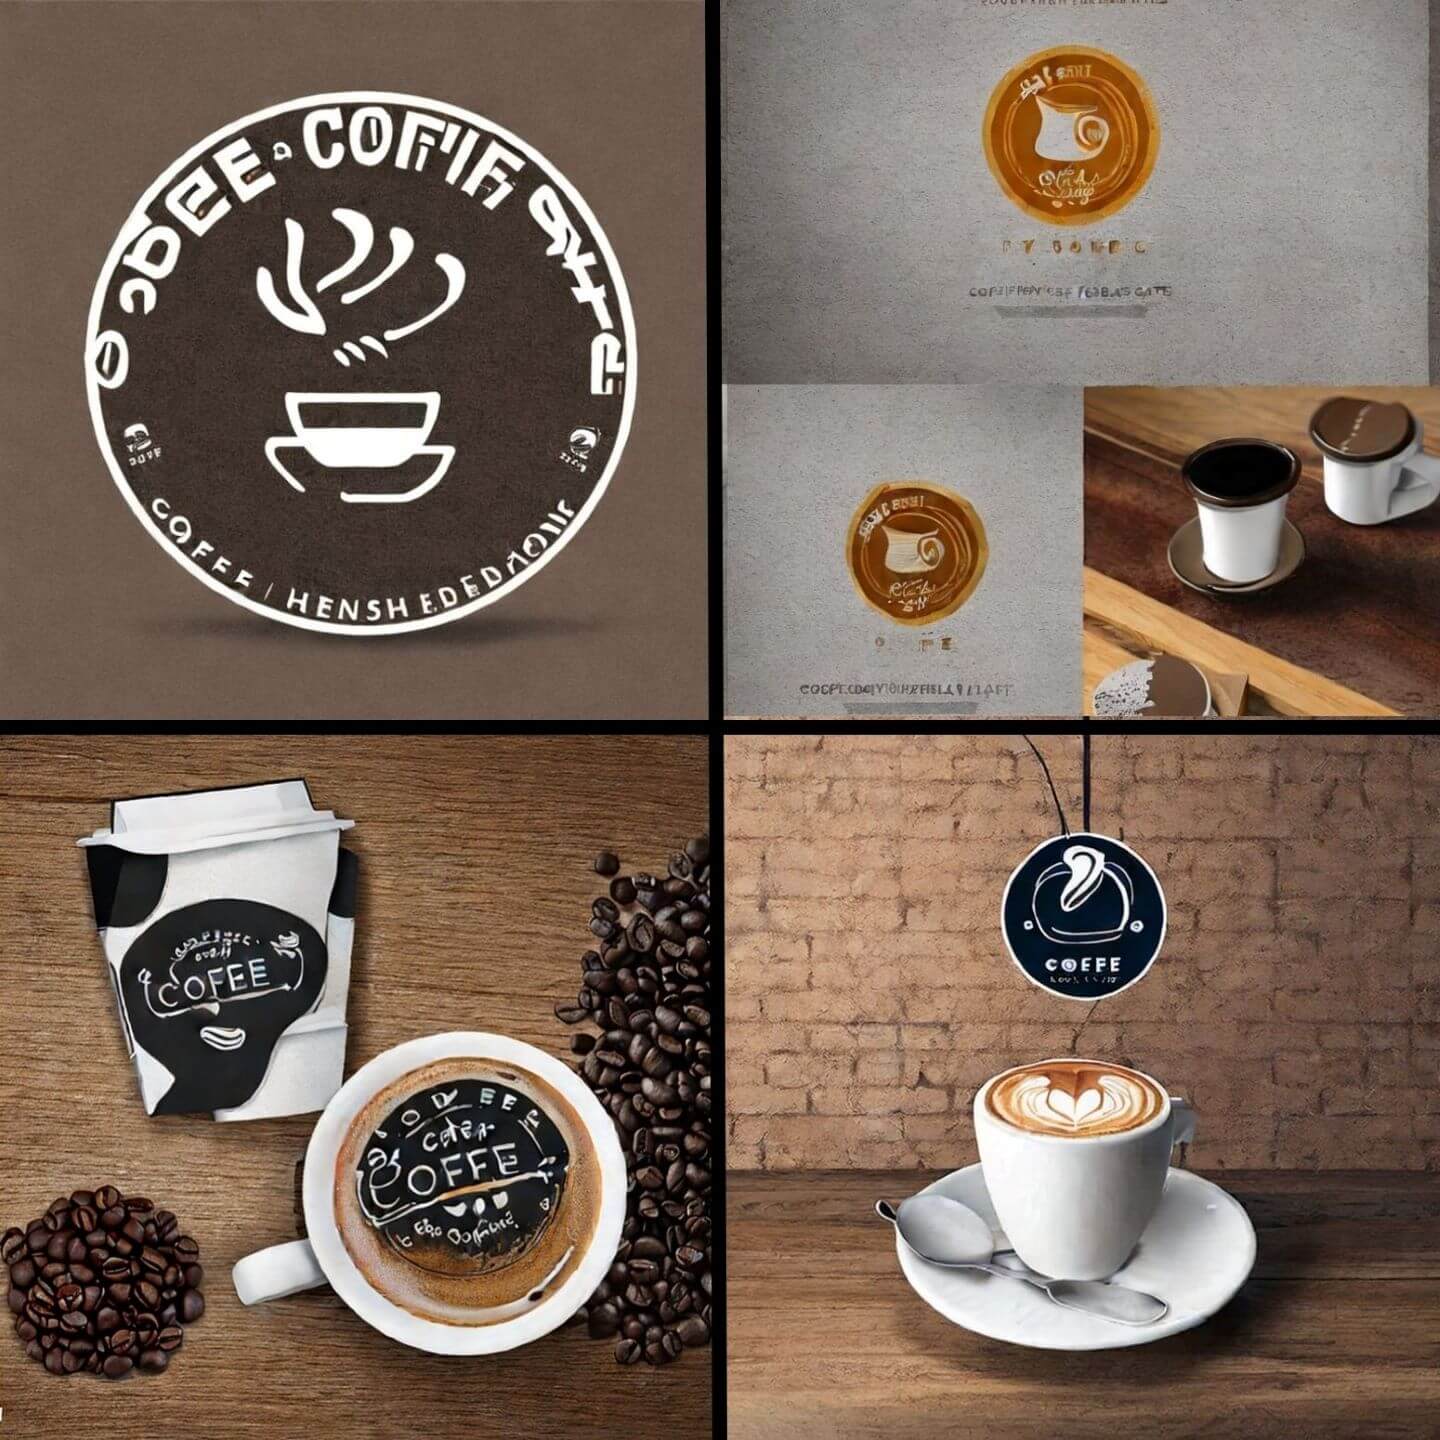 Stable Diffusionで作成したコーヒーショップのロゴデザイン例